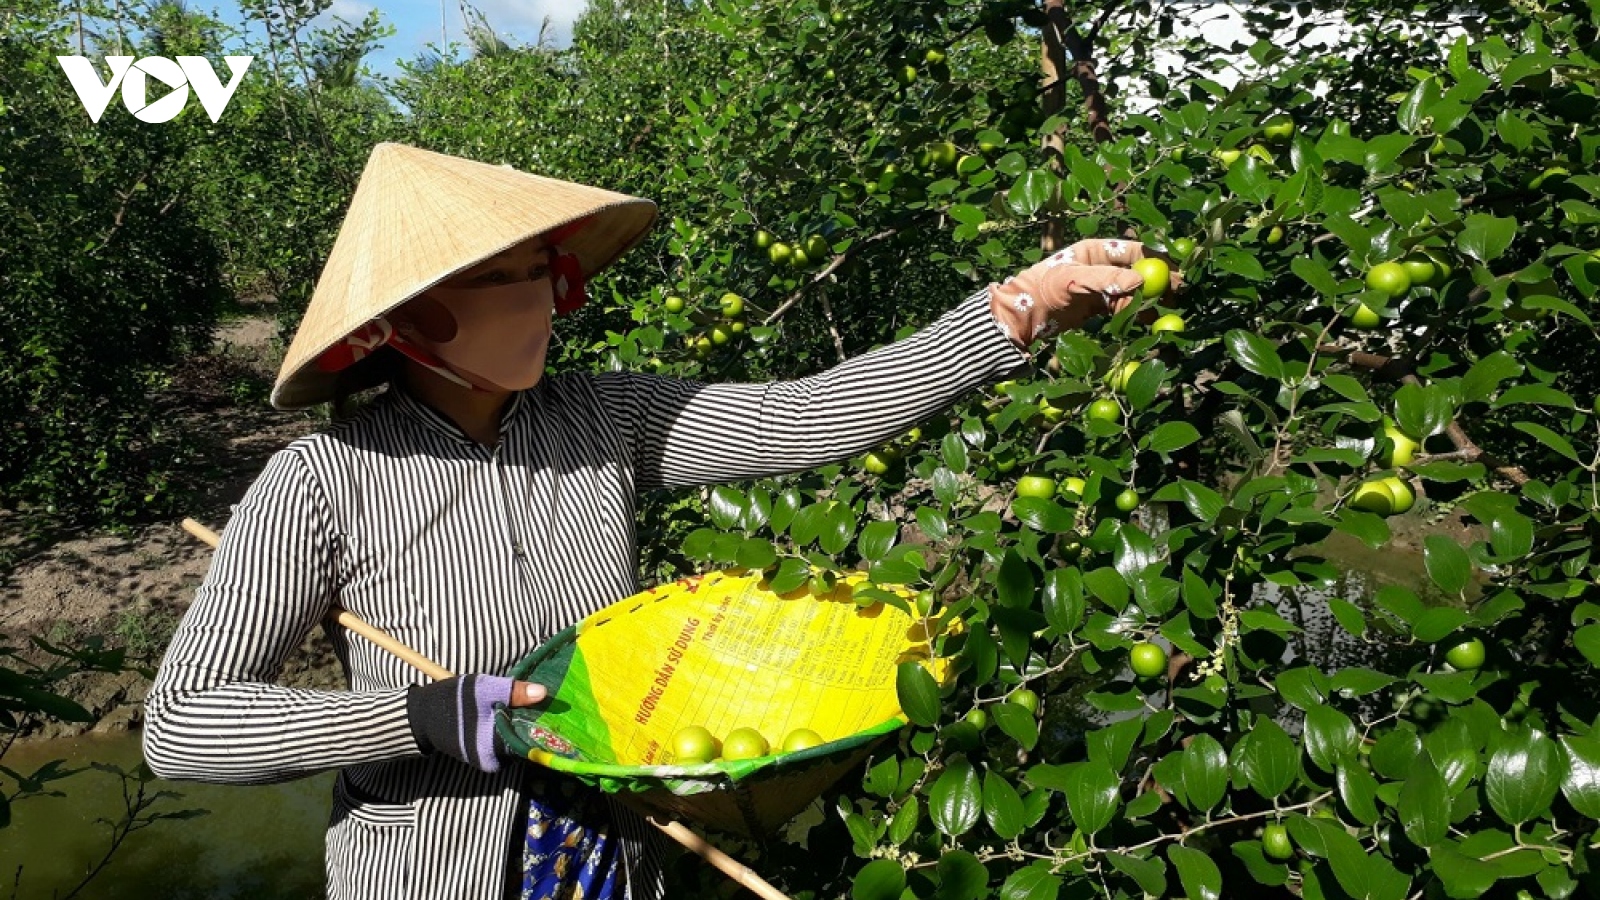 Nông dân Sóc Trăng trồng táo hồng, thu từ 200 – 225 triệu đồng/ha